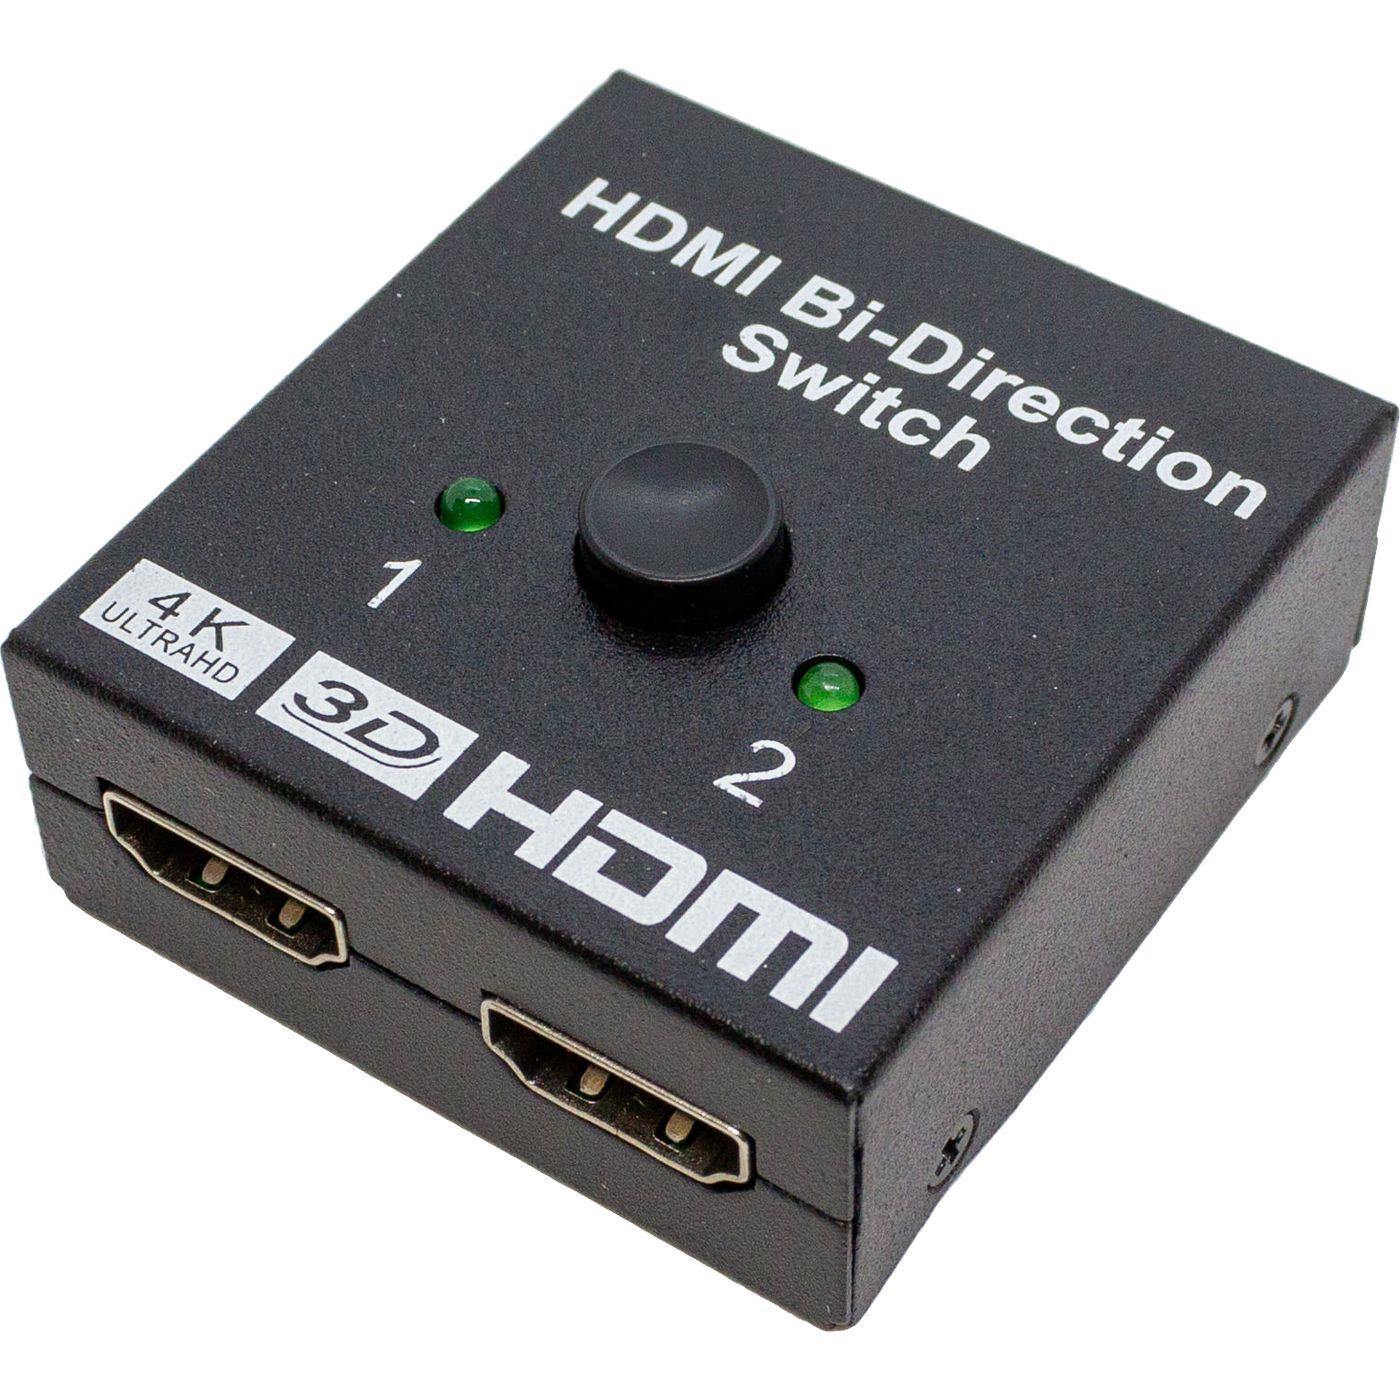 HDMI Umschalter 2x1 bidirektional Verteiler Switch FULL HD vergoldete Kontakte